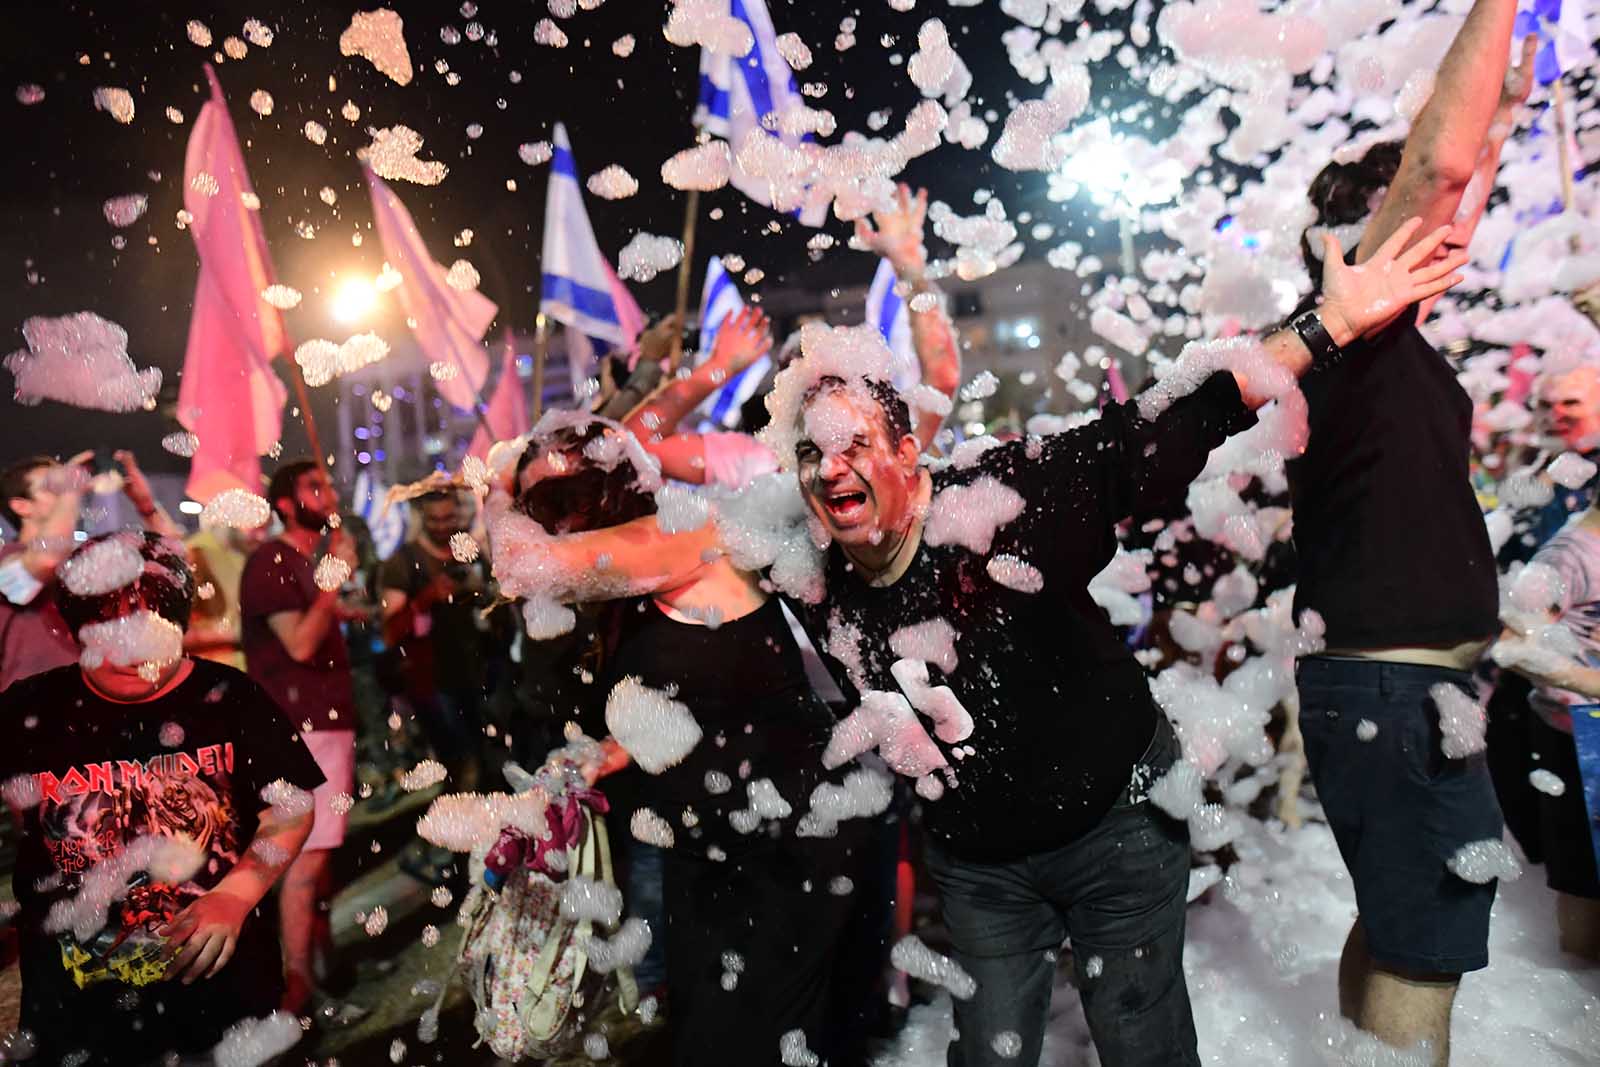 חגיגות בכיכר רבין, תל אביב על השבעת הממשלה החדשה (צילום: תומר נויברג/פלאש 90)